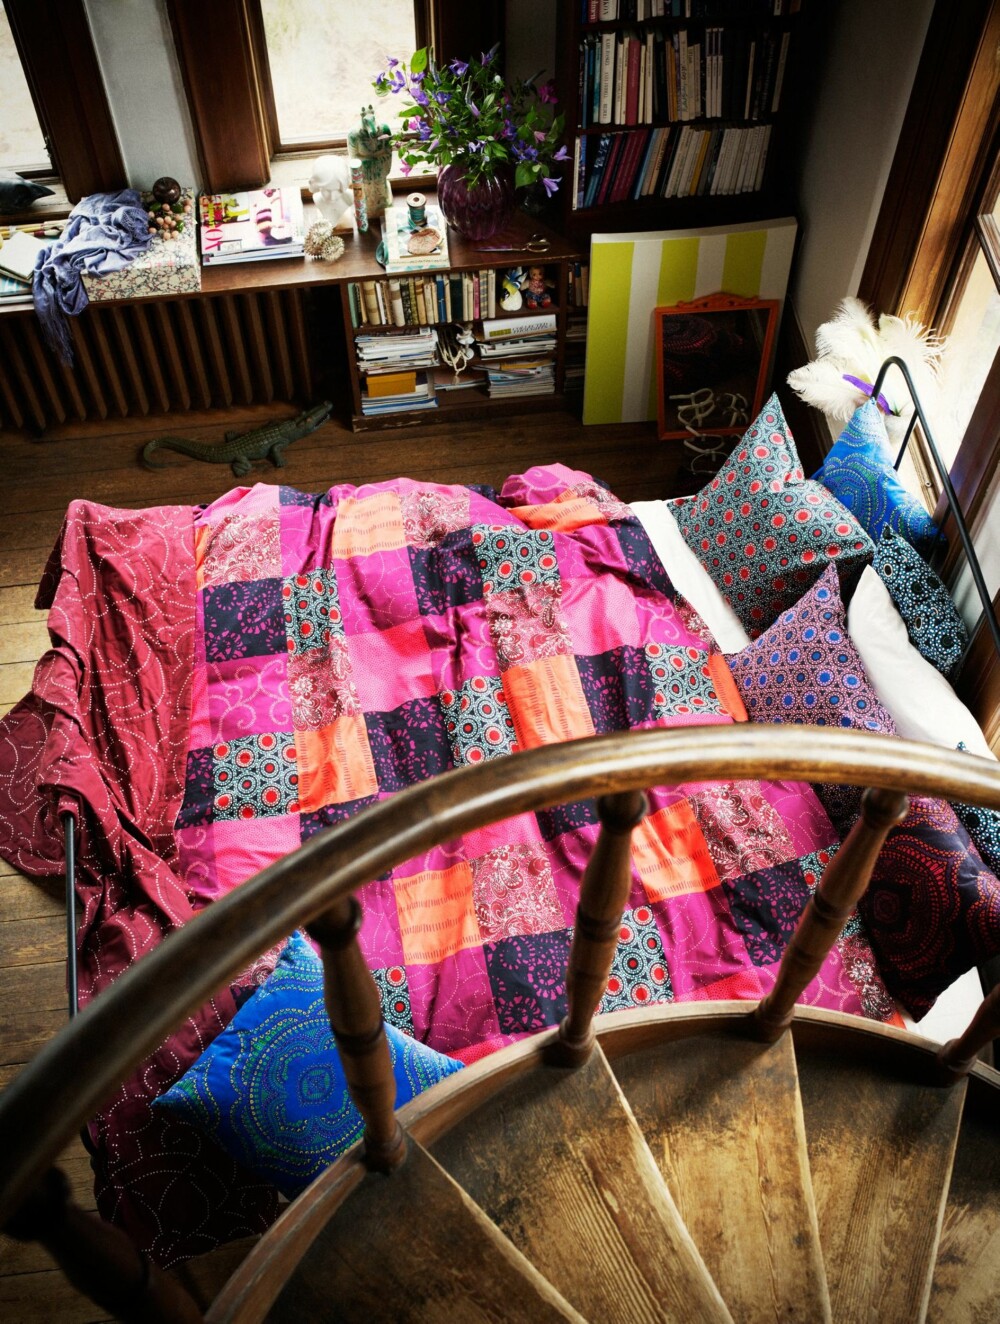 KOLLEKSJON MED KARAKTER: Designeren Anna Efverlund og Maria Vinka har laget tekstilkolleksjonen Nätvide. Dette er mønstre fra Ikeas-arkiver som er omarbeidet. Inspirasjonen kommer fra reiser og ulike kulturer.